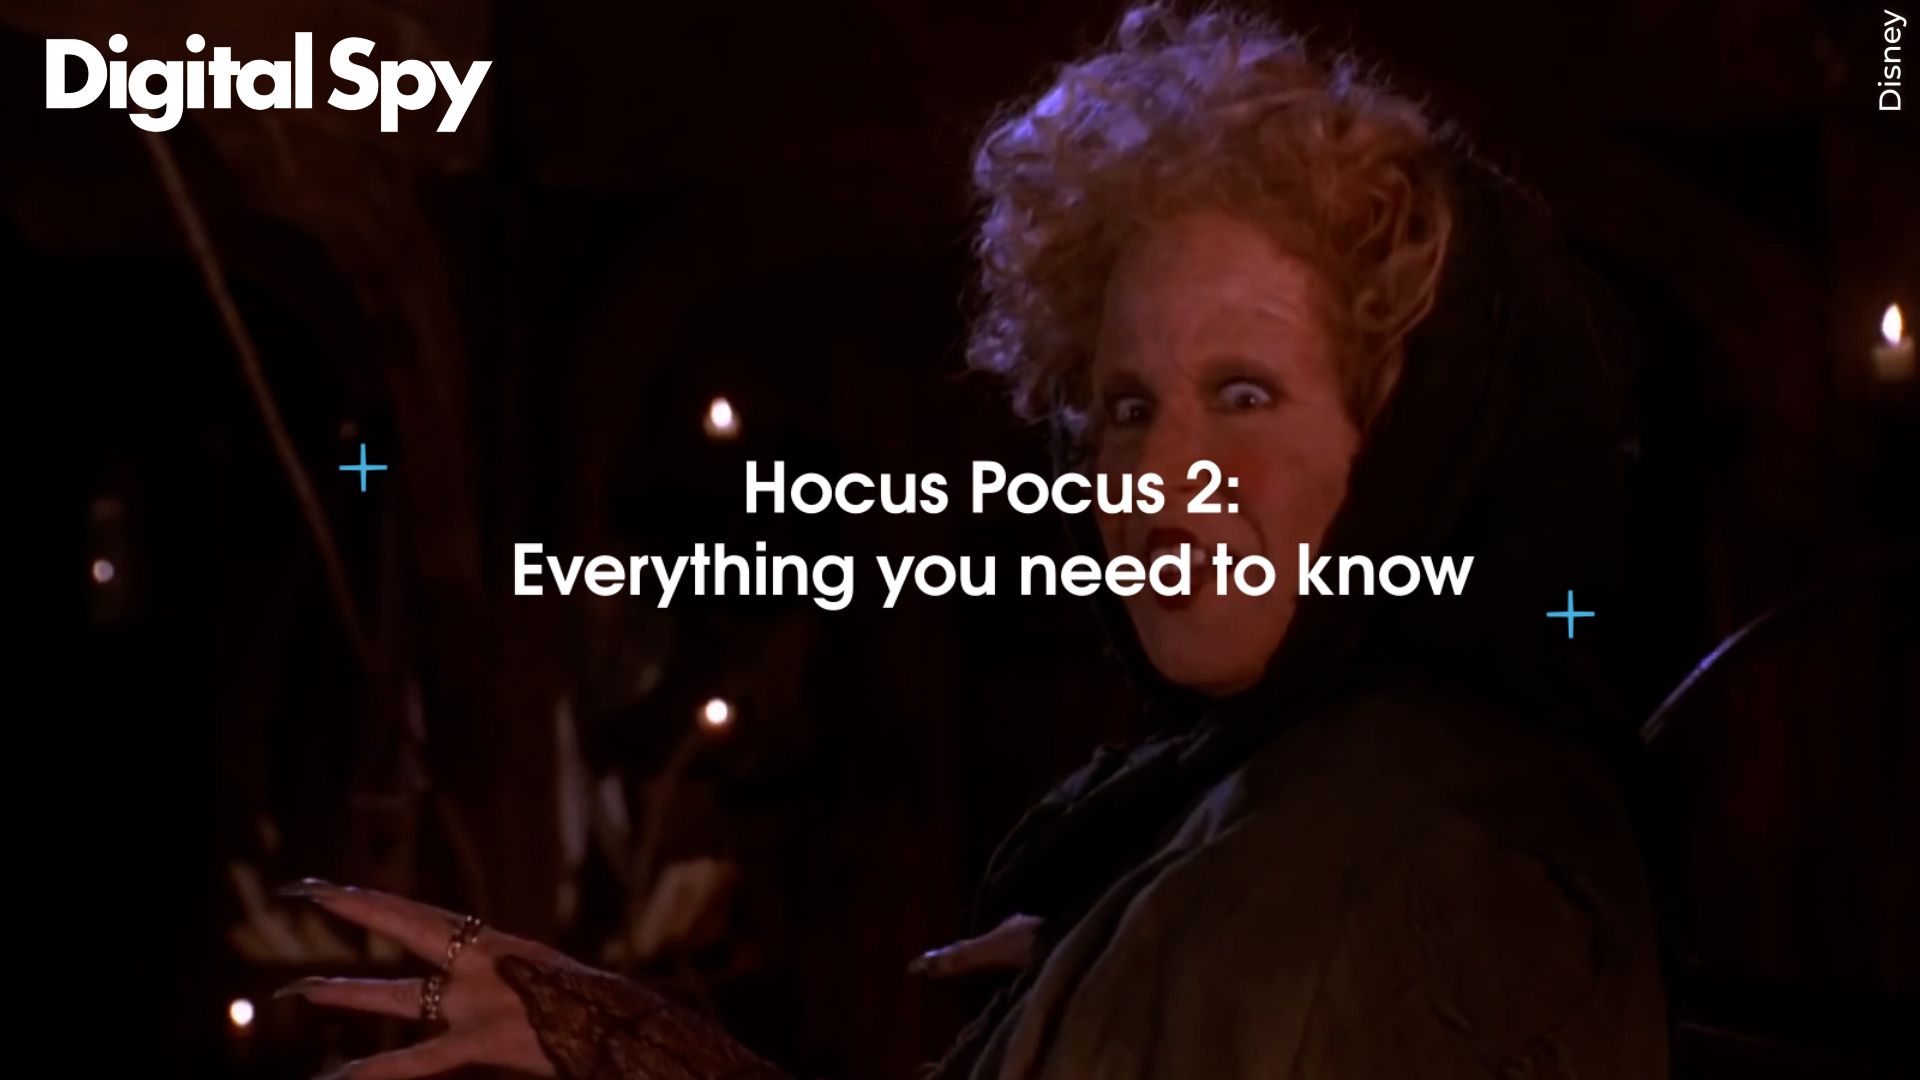 hocus pocus download full movie free